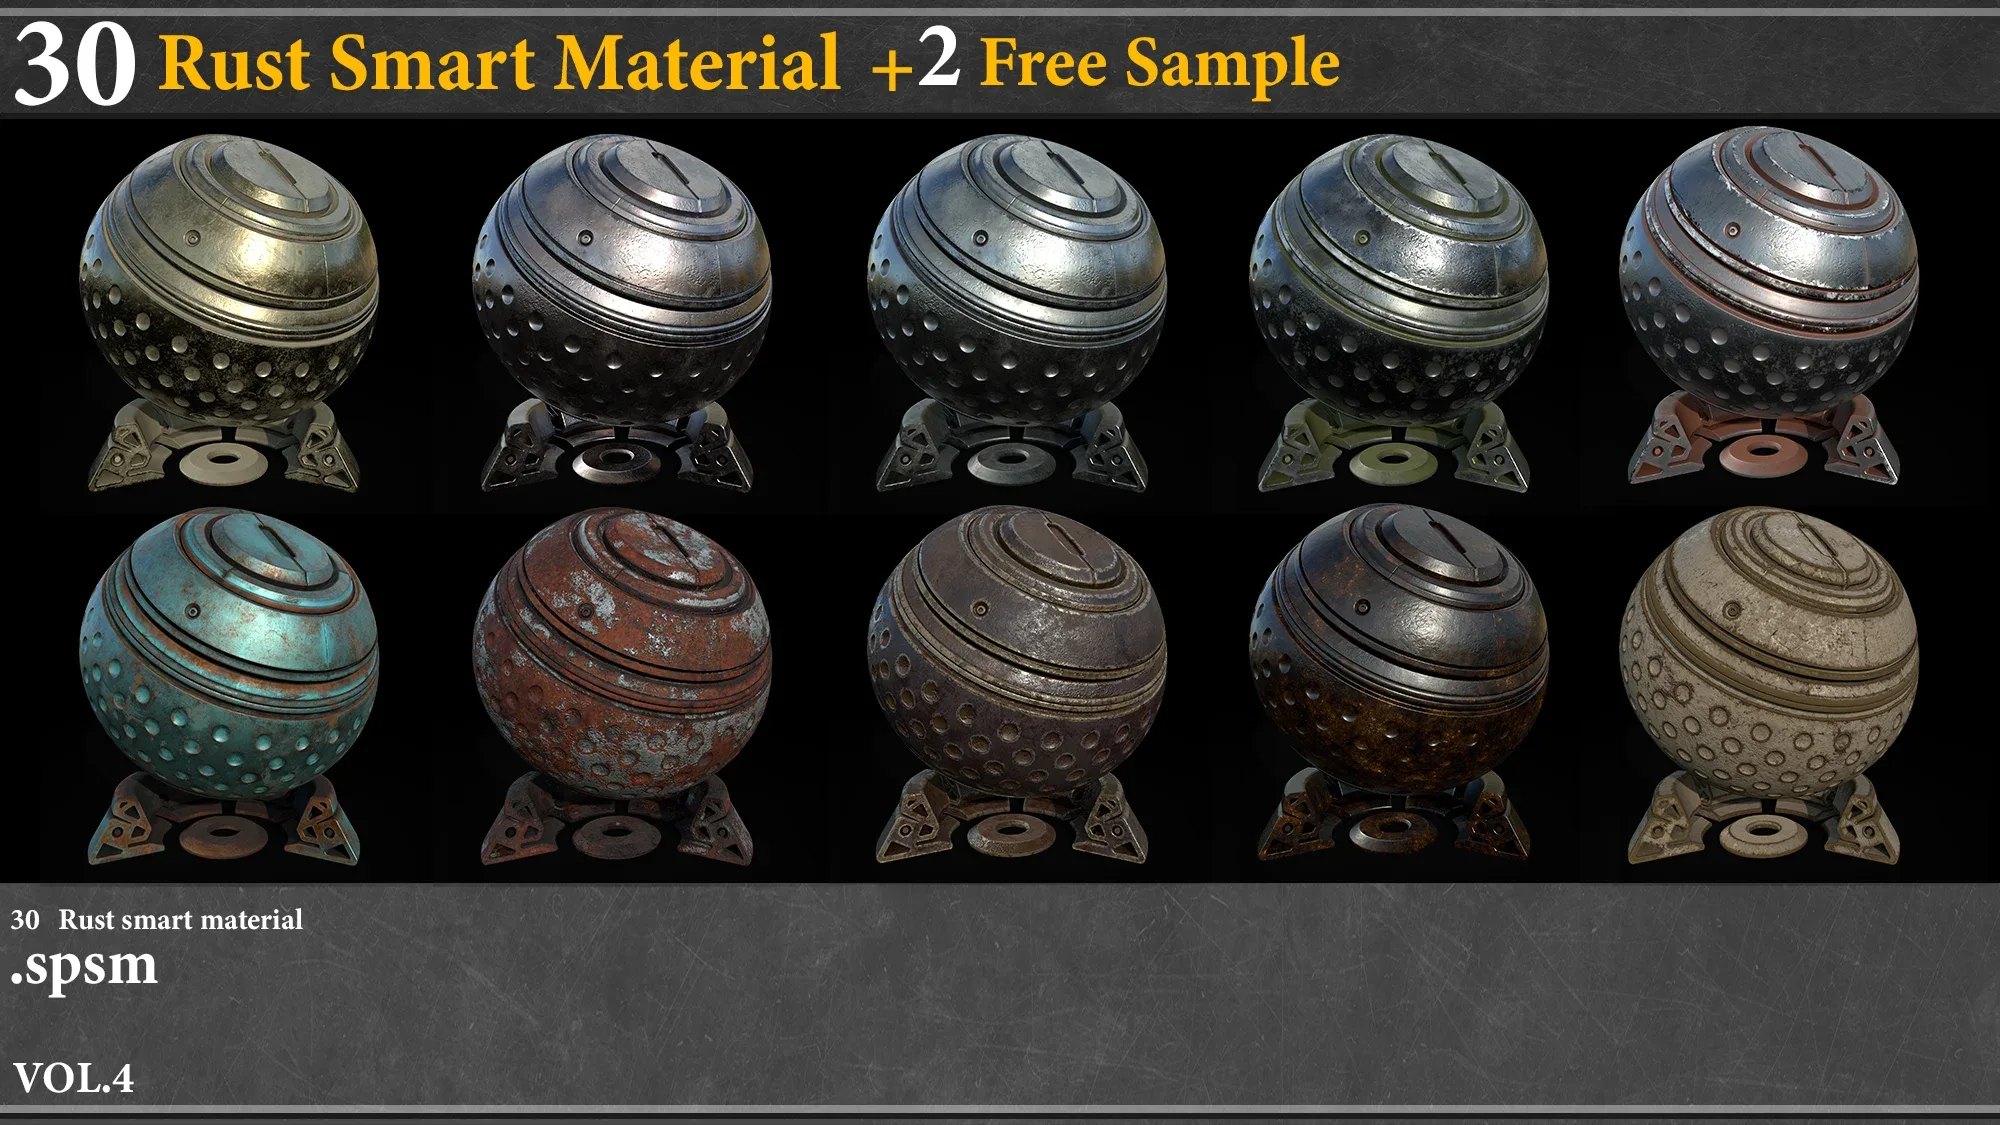 30 Rust Smart Material Vol.4 + 2 free samples